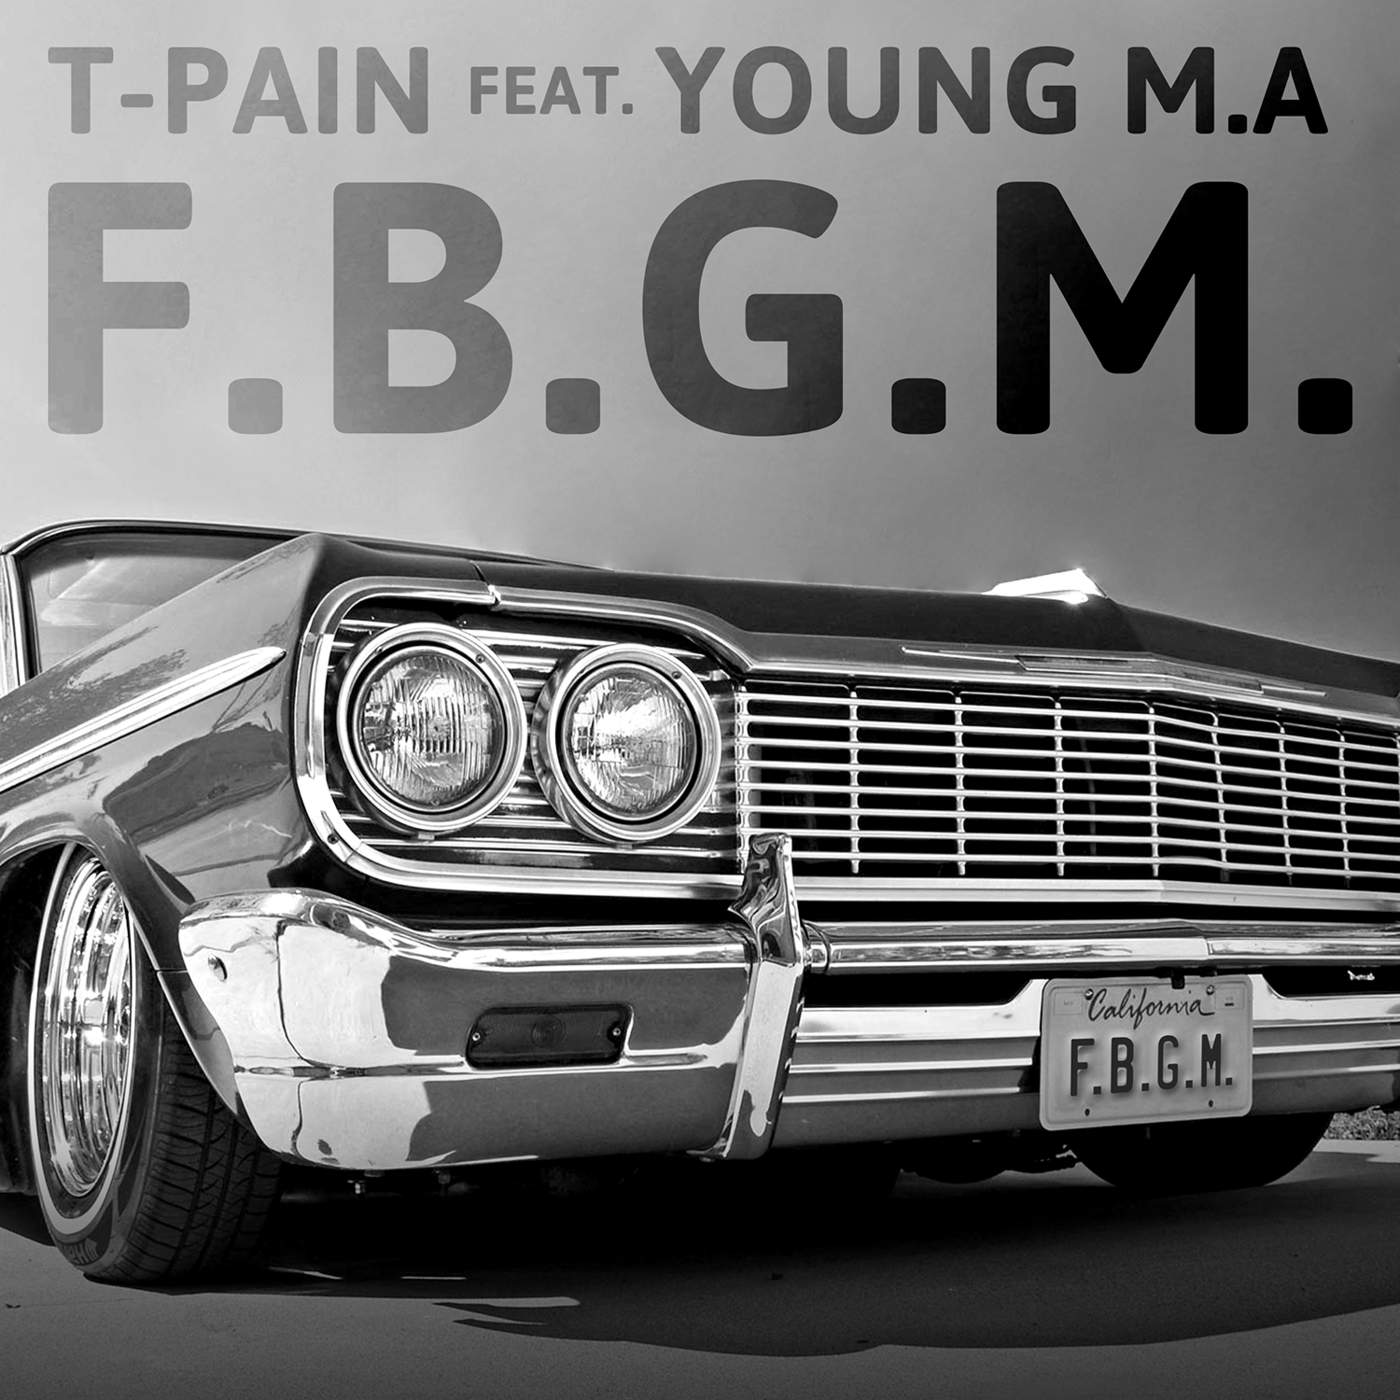 New Music: T-Pain – “F.B.G.M.” Feat. Young M.A [LISTEN]